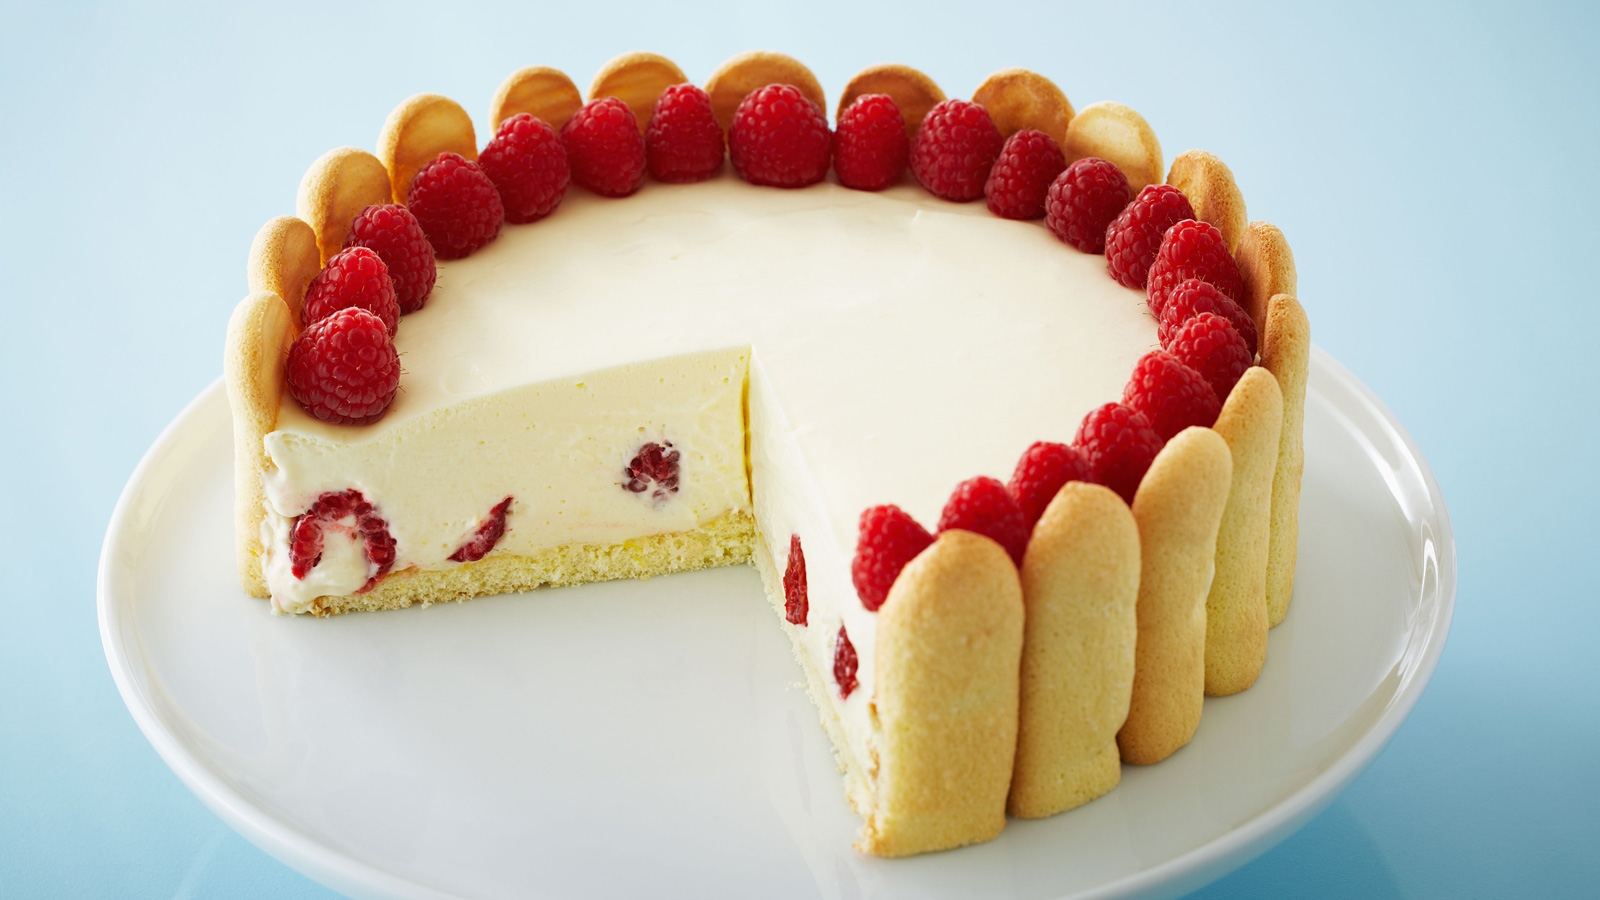 Tarta de mousse de limón con frambuesas (Elegant raspberry lemon torte) - Anna  Olson - Receta - Canal Cocina